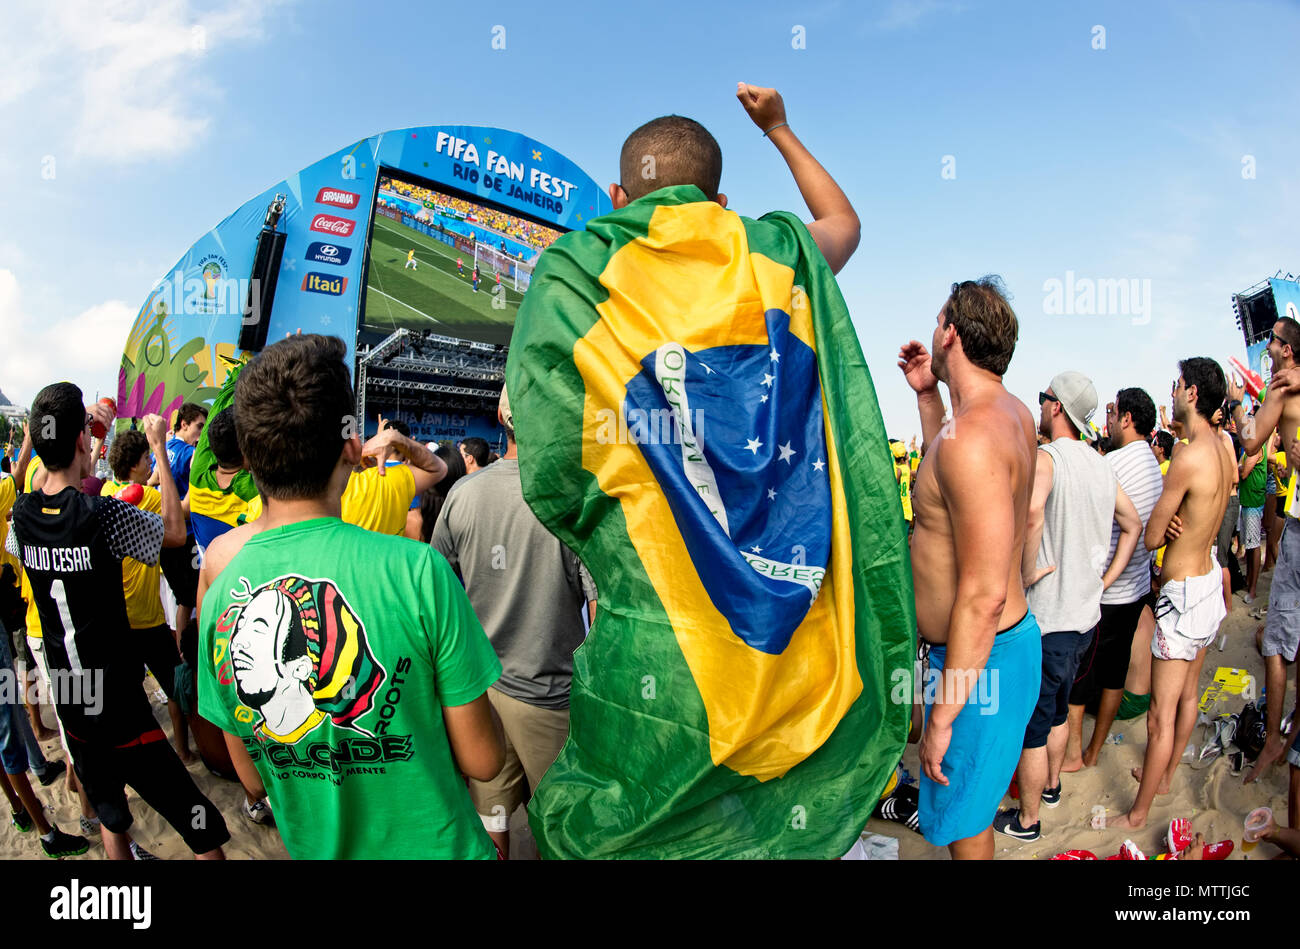 Coupe du monde, Rio de Janeiro, Brésil - le 28 juin 2014 : Brazilian soccer fans soutenir leur équipe de football à la Fifa Fan Fest, sur la plage de Copacabana Banque D'Images